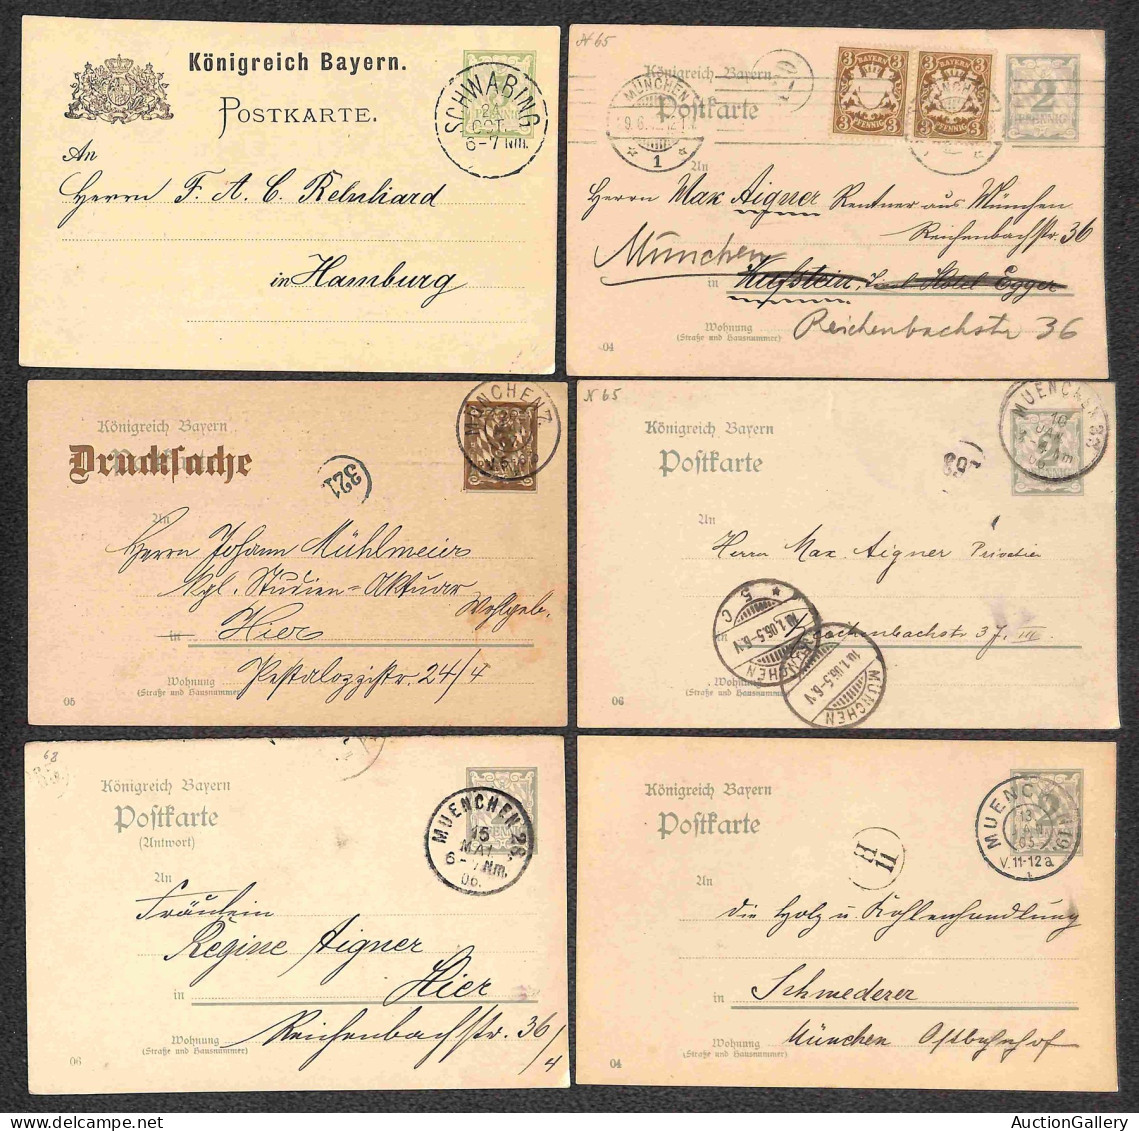 Lotti e Collezioni - Europa e Oltremare - GERMANIA - BAYERN - 1873/1919 - Insieme di 81 Interi Postali di cui 76 cartoli